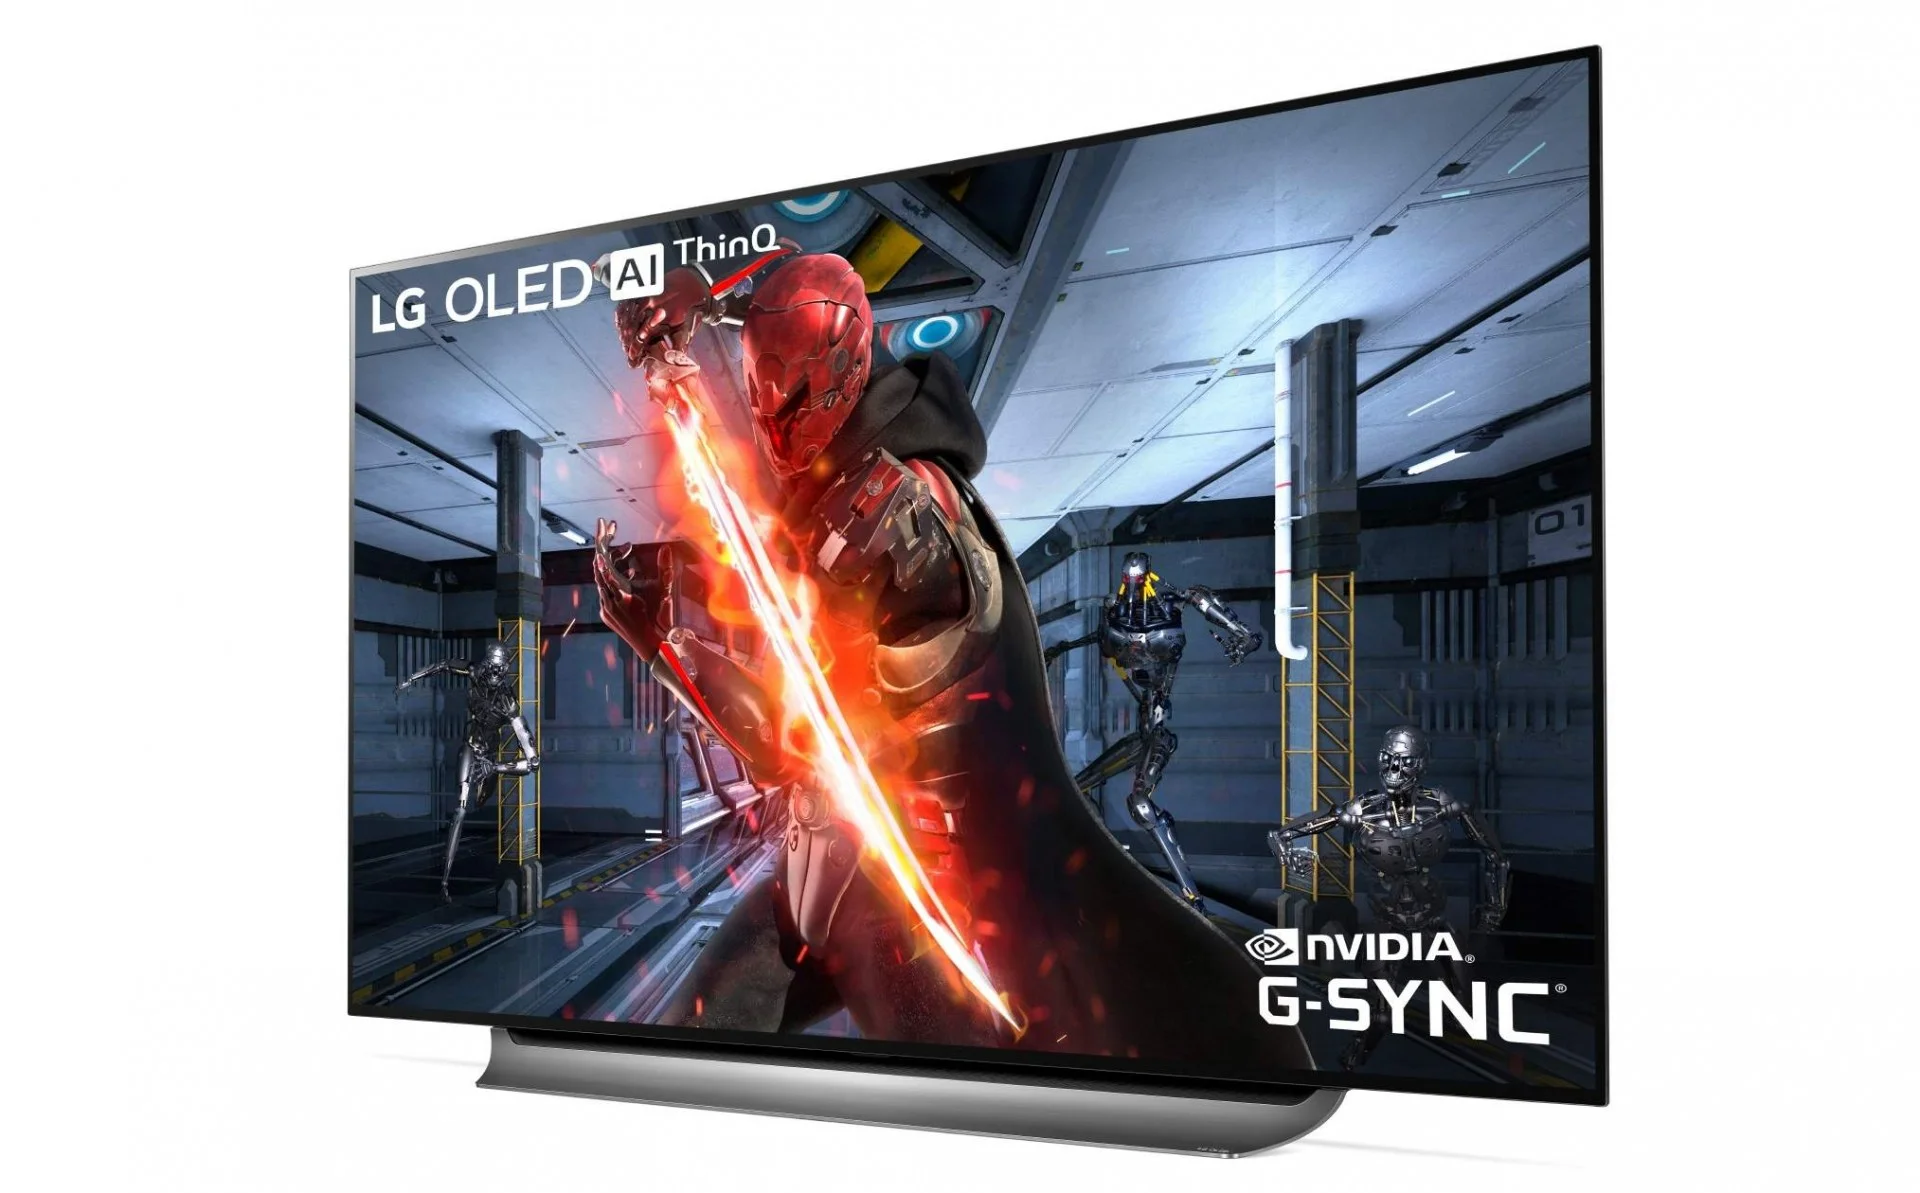 LG представила игровые телевизоры OLED с технологией G-Sync Compatibility - фото 1